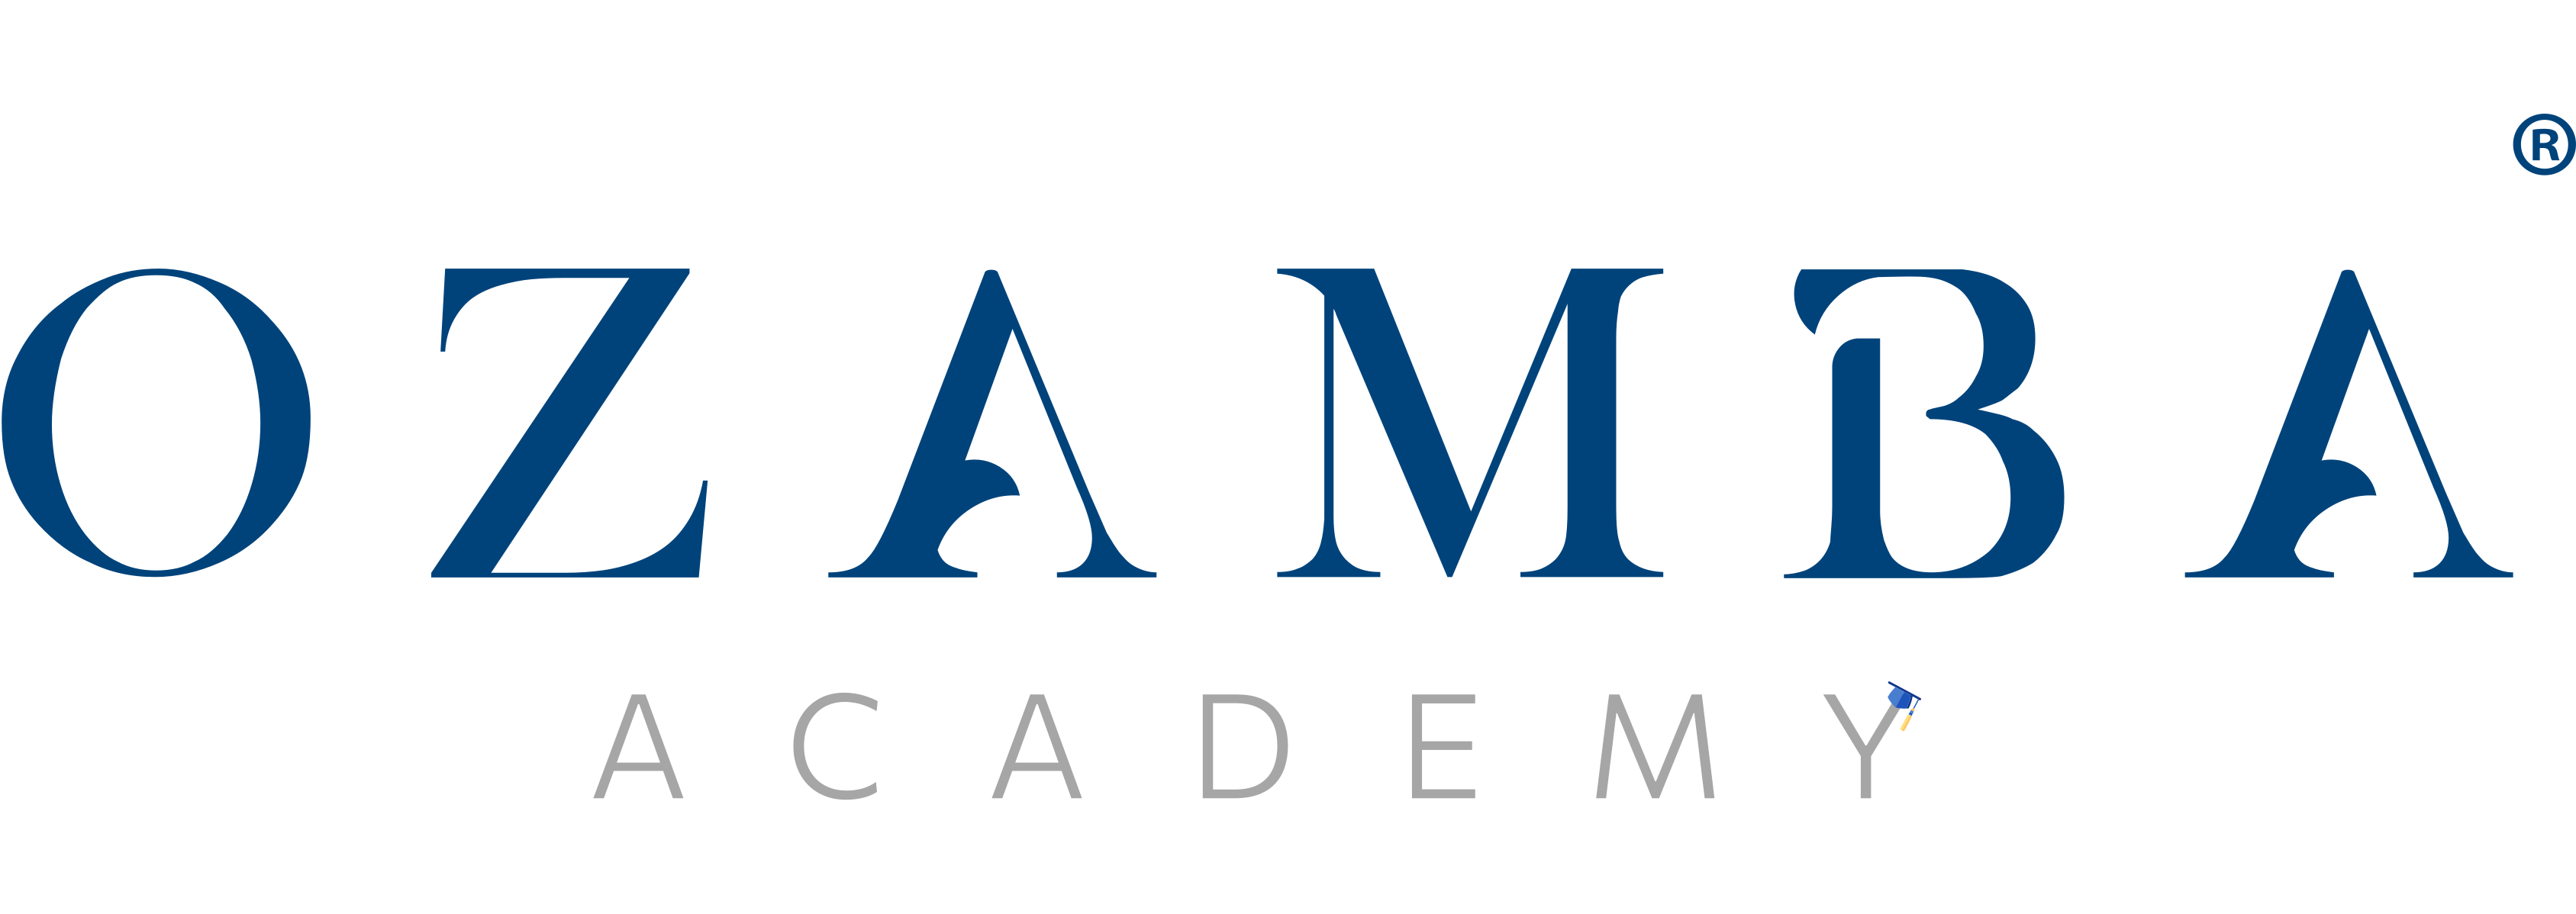 Ozamba Academy